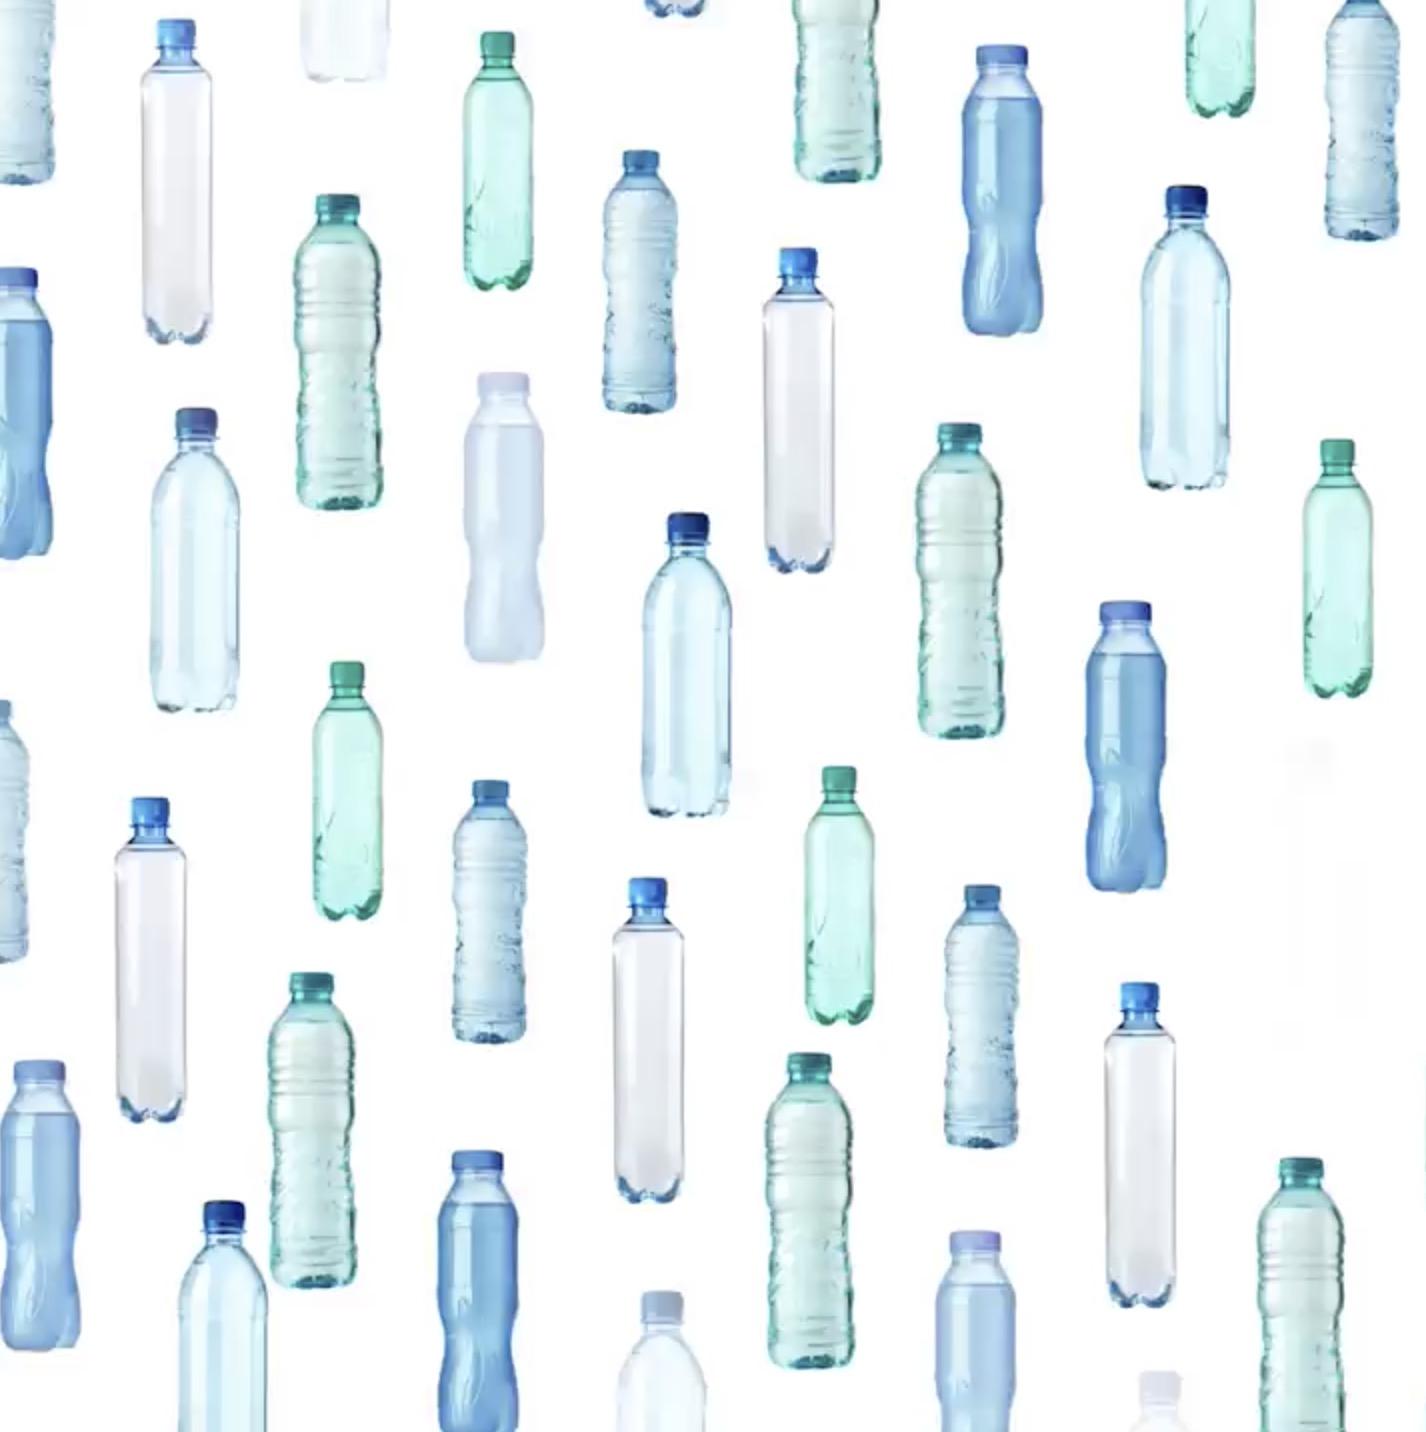 Da 20 bottiglie in PET possono nascere 20 nuove bottiglie